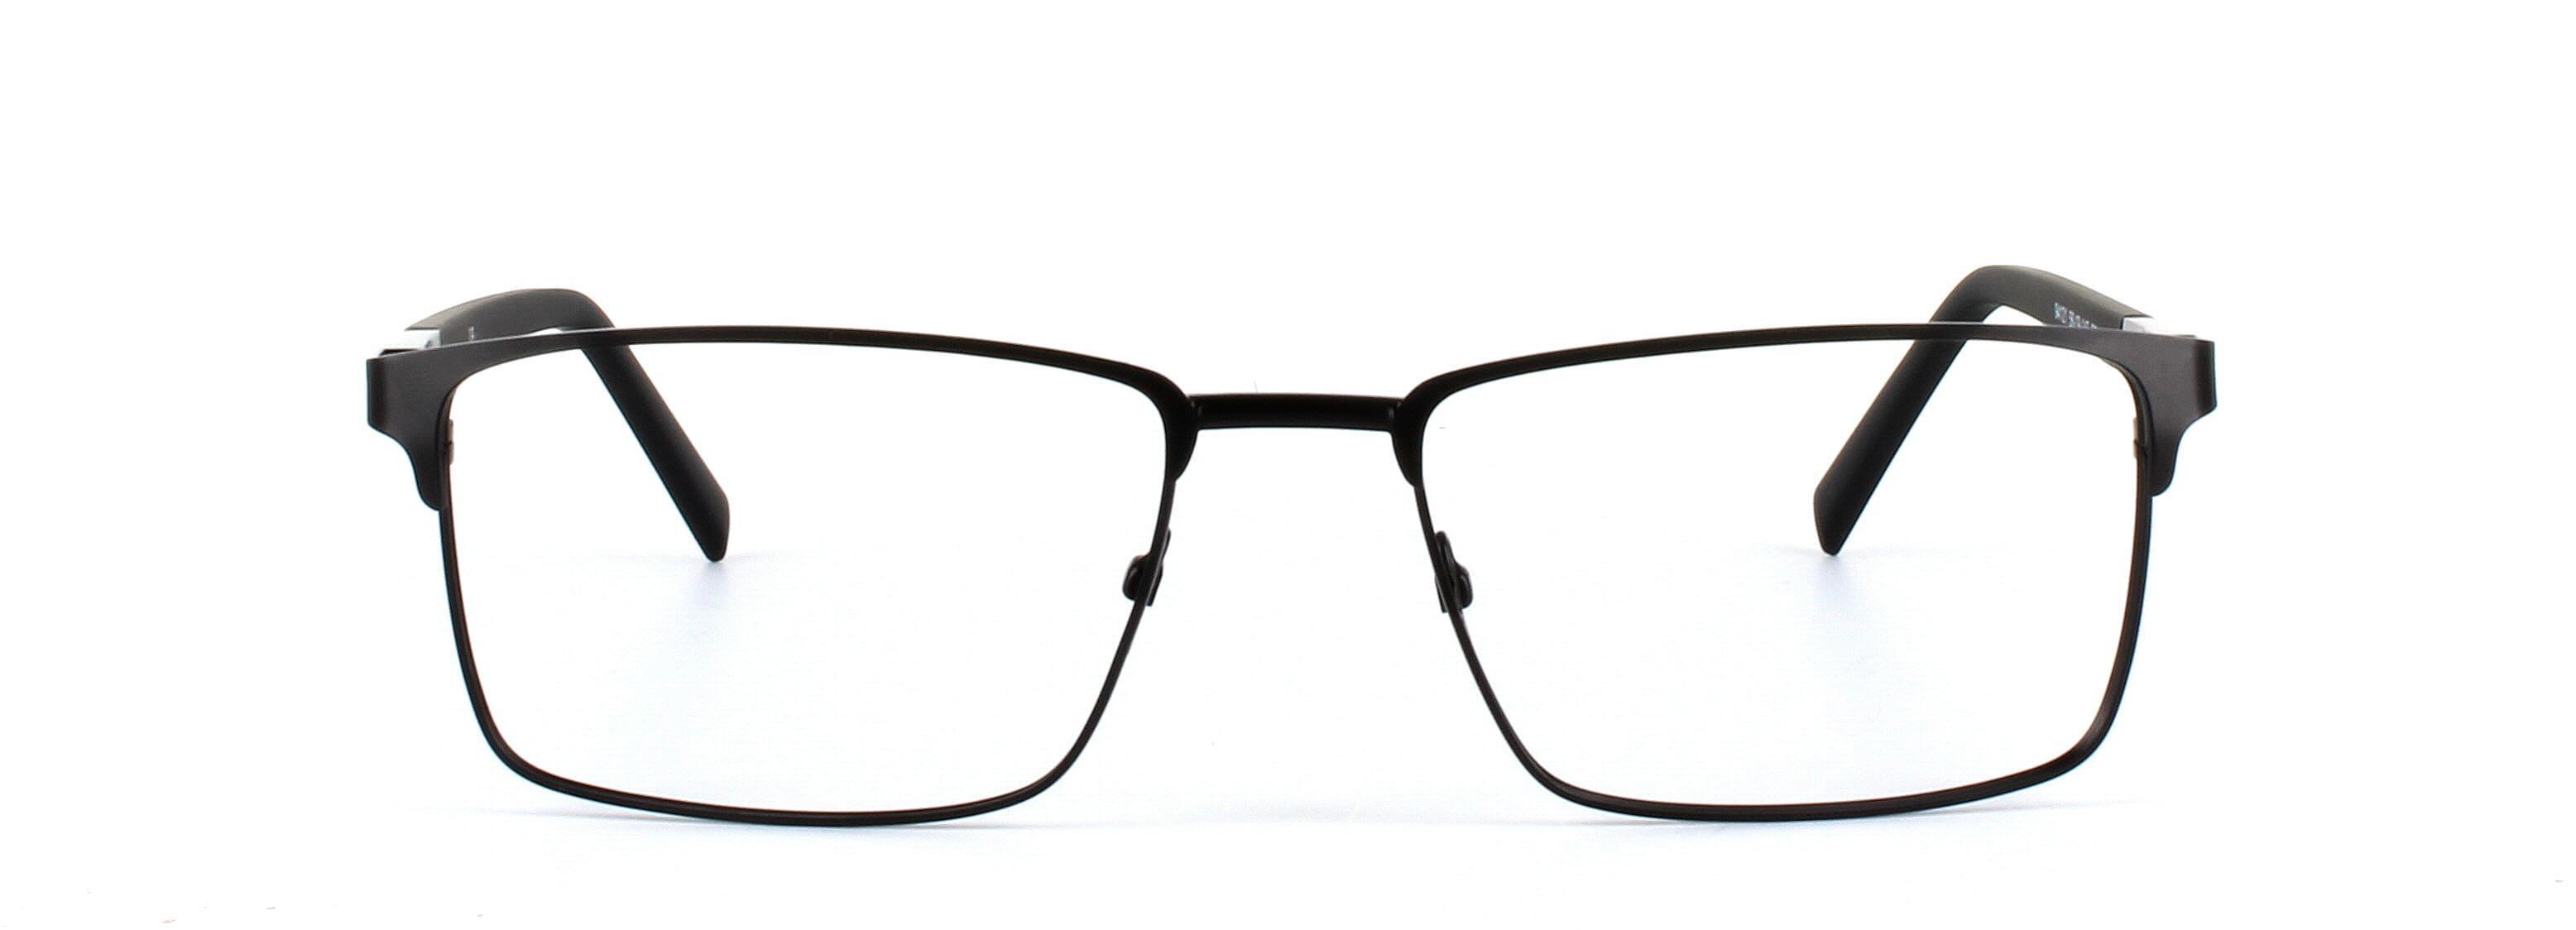 Natark Black Full Rim Metal Glasses - Image View 5